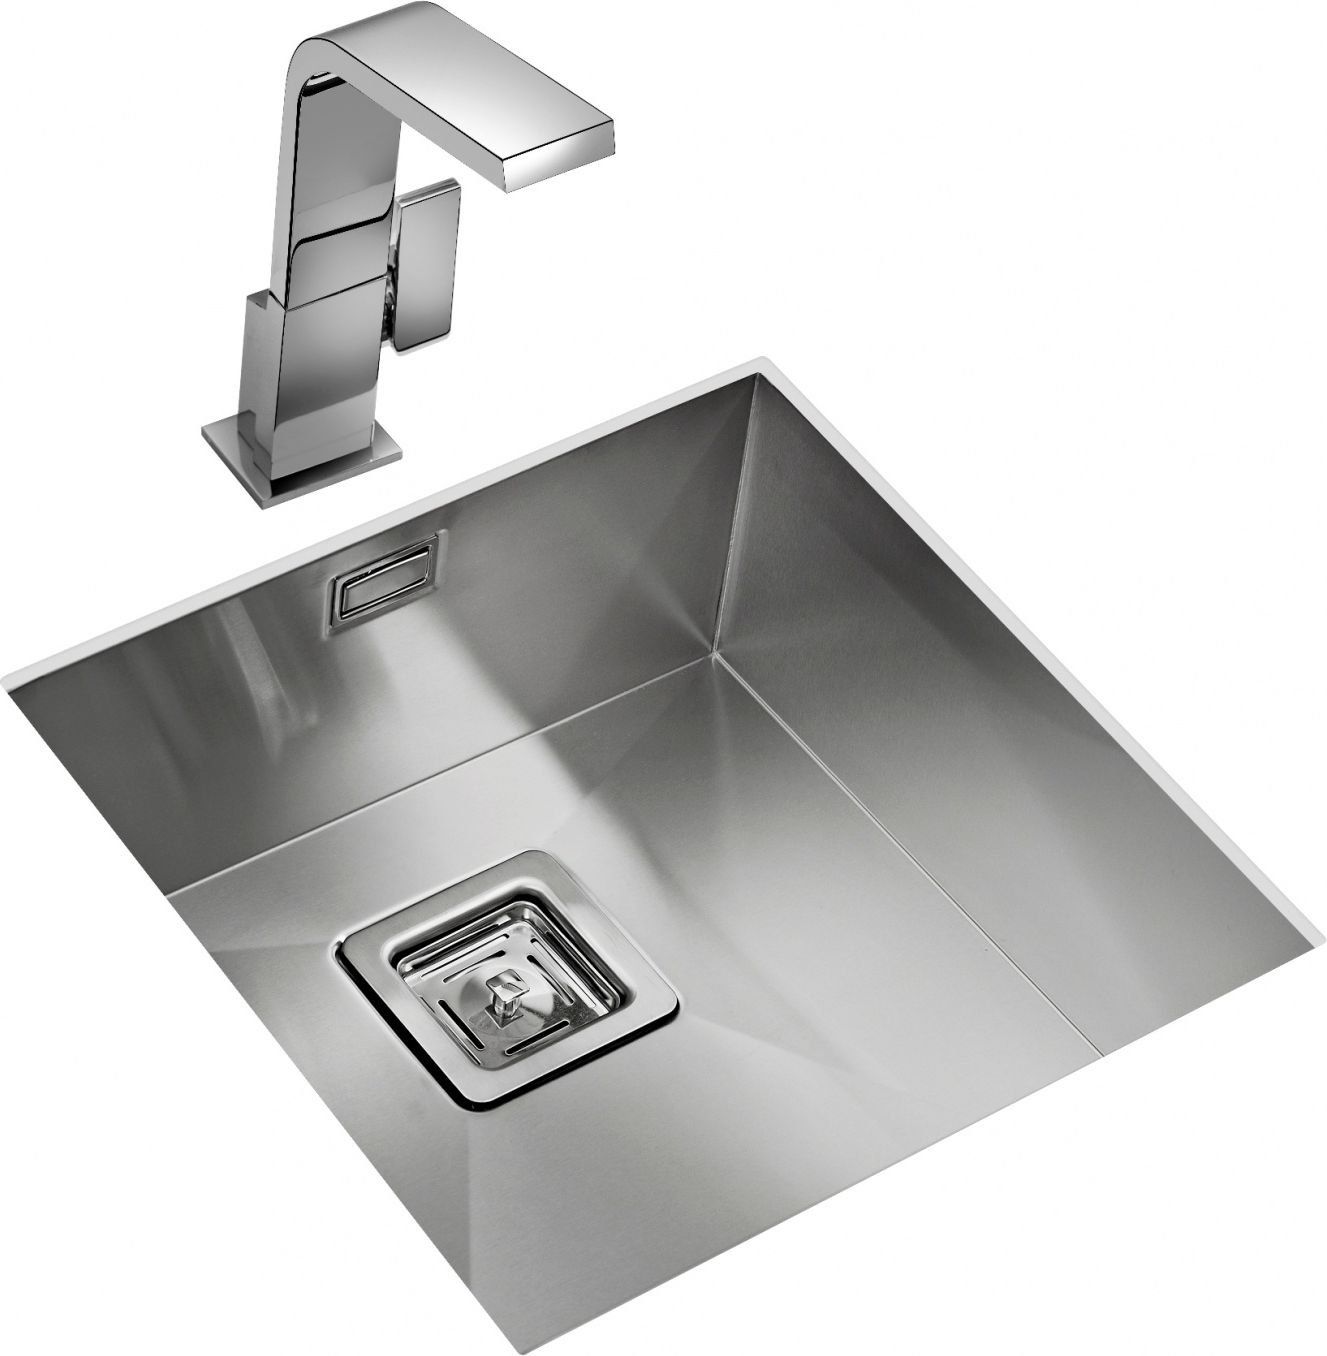 Begrijpen Boekwinkel Concentratie Teka Square 400/400 kitchen sink - Twaiko - de beste service tegen een  scherpe prijs